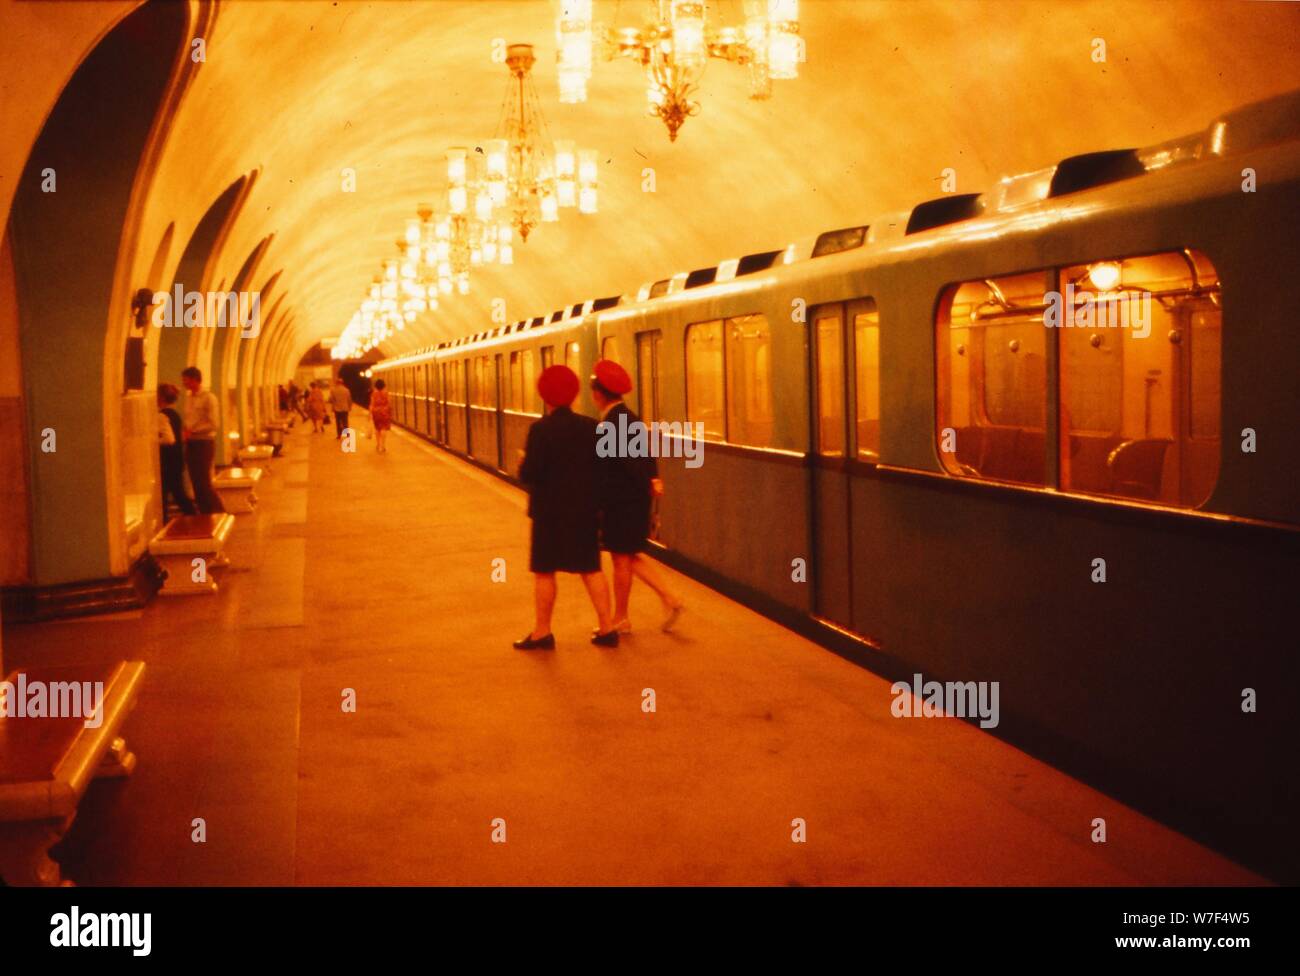 Moscow, Underground, c1970s. Artist: CM Dixon. Stock Photo